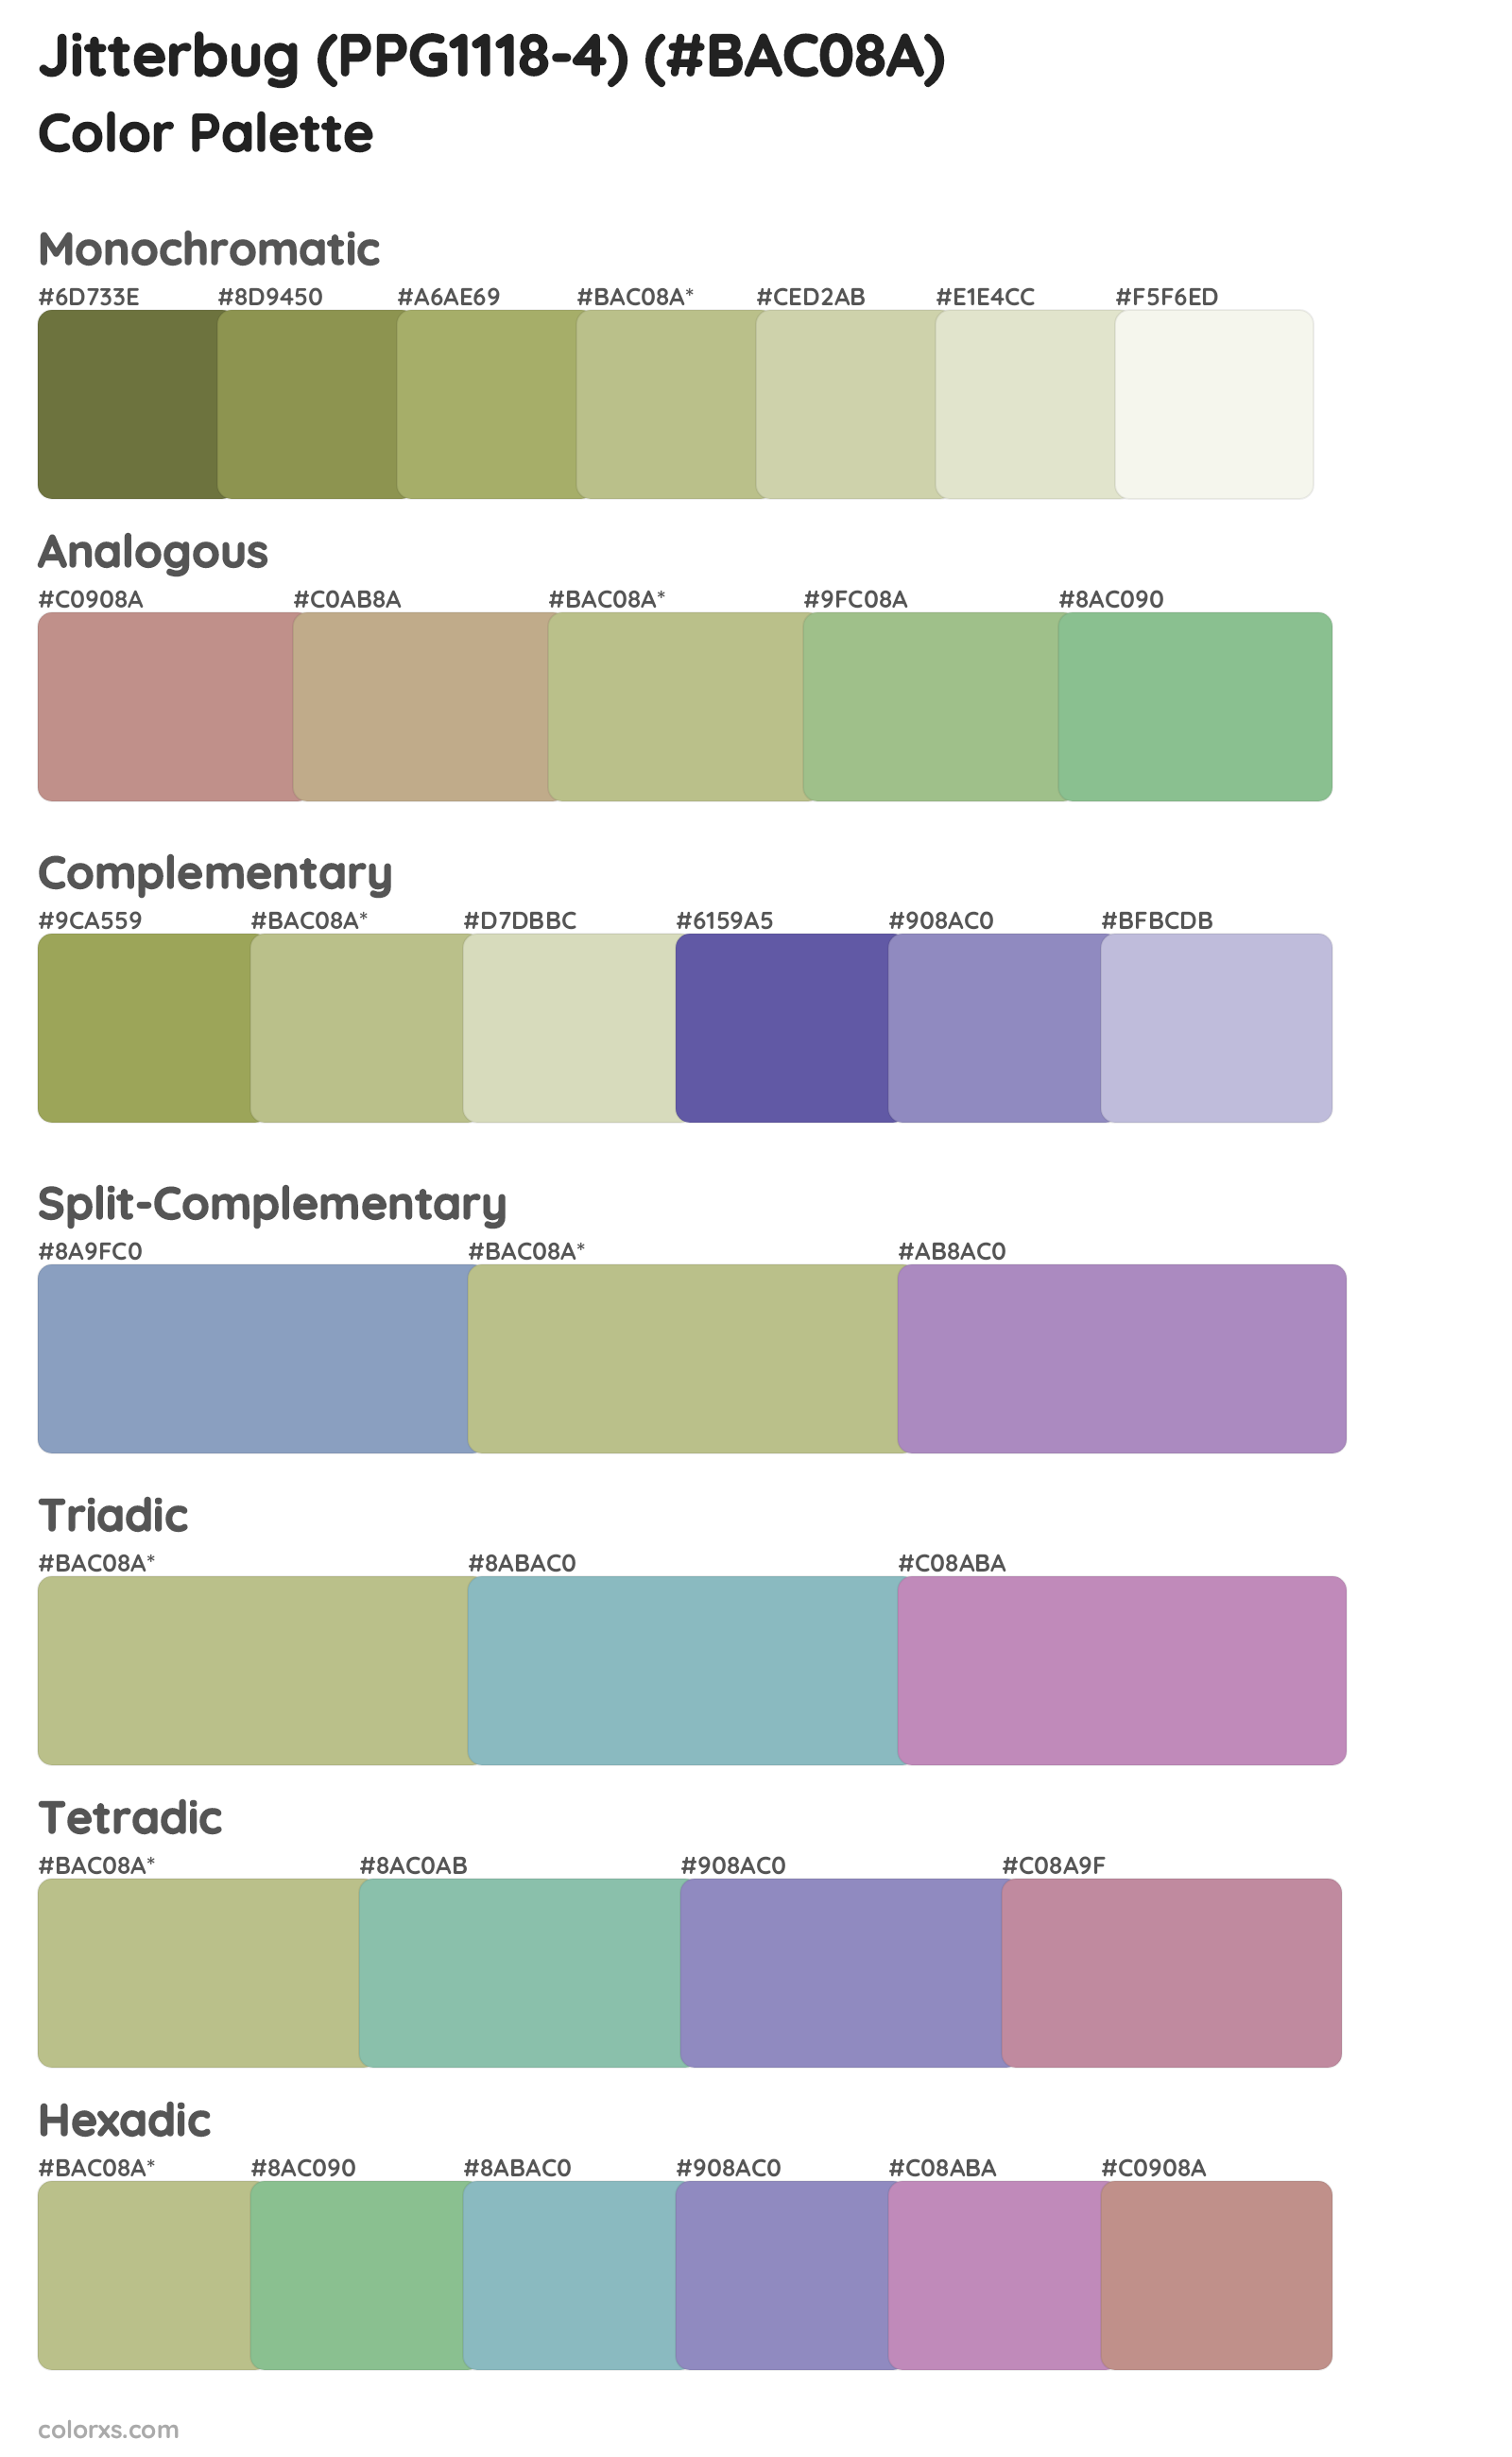 Jitterbug (PPG1118-4) Color Scheme Palettes